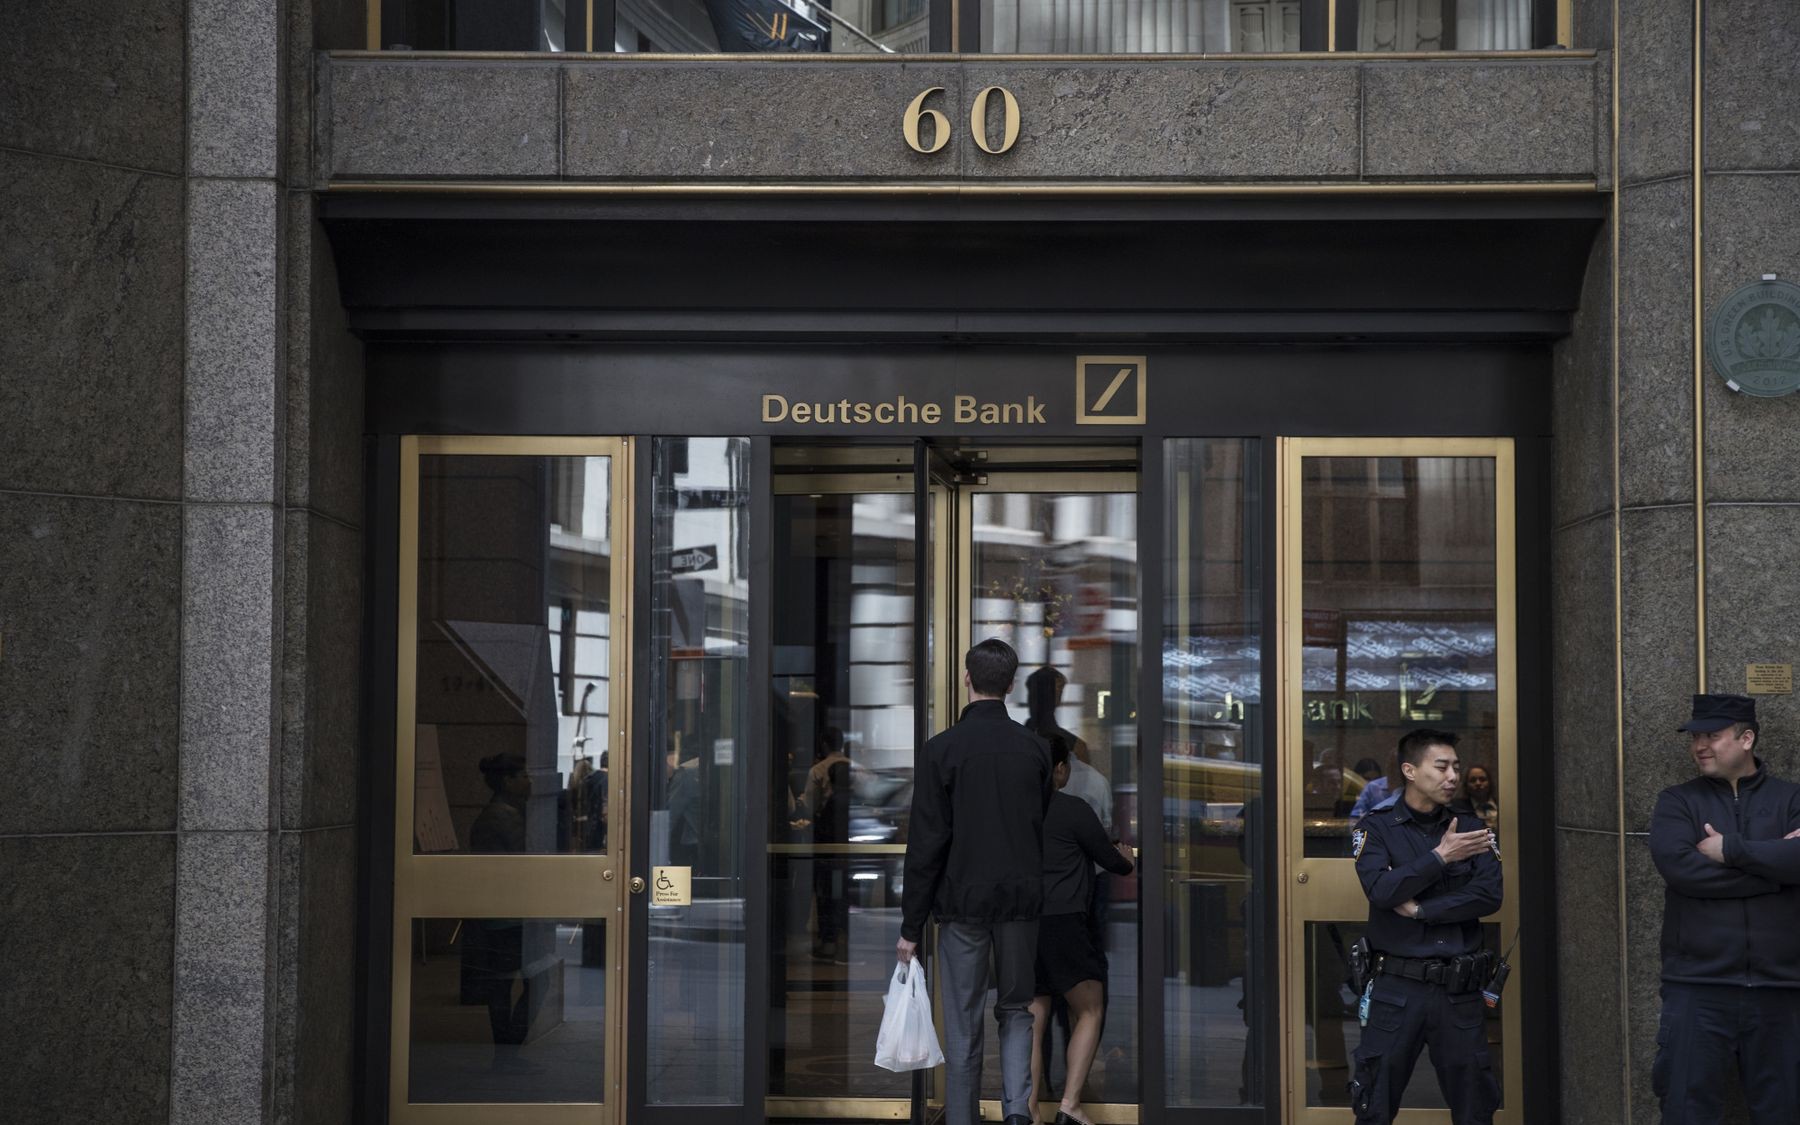 Thảm cảnh của ngân hàng Deutsche Bank: Văn phòng trống trơn, ngổn ngang giấy tờ, nhân viên ra ngoài uống bia dù đang là giữa buổi sáng, sếp thờ ơ không quan tâm